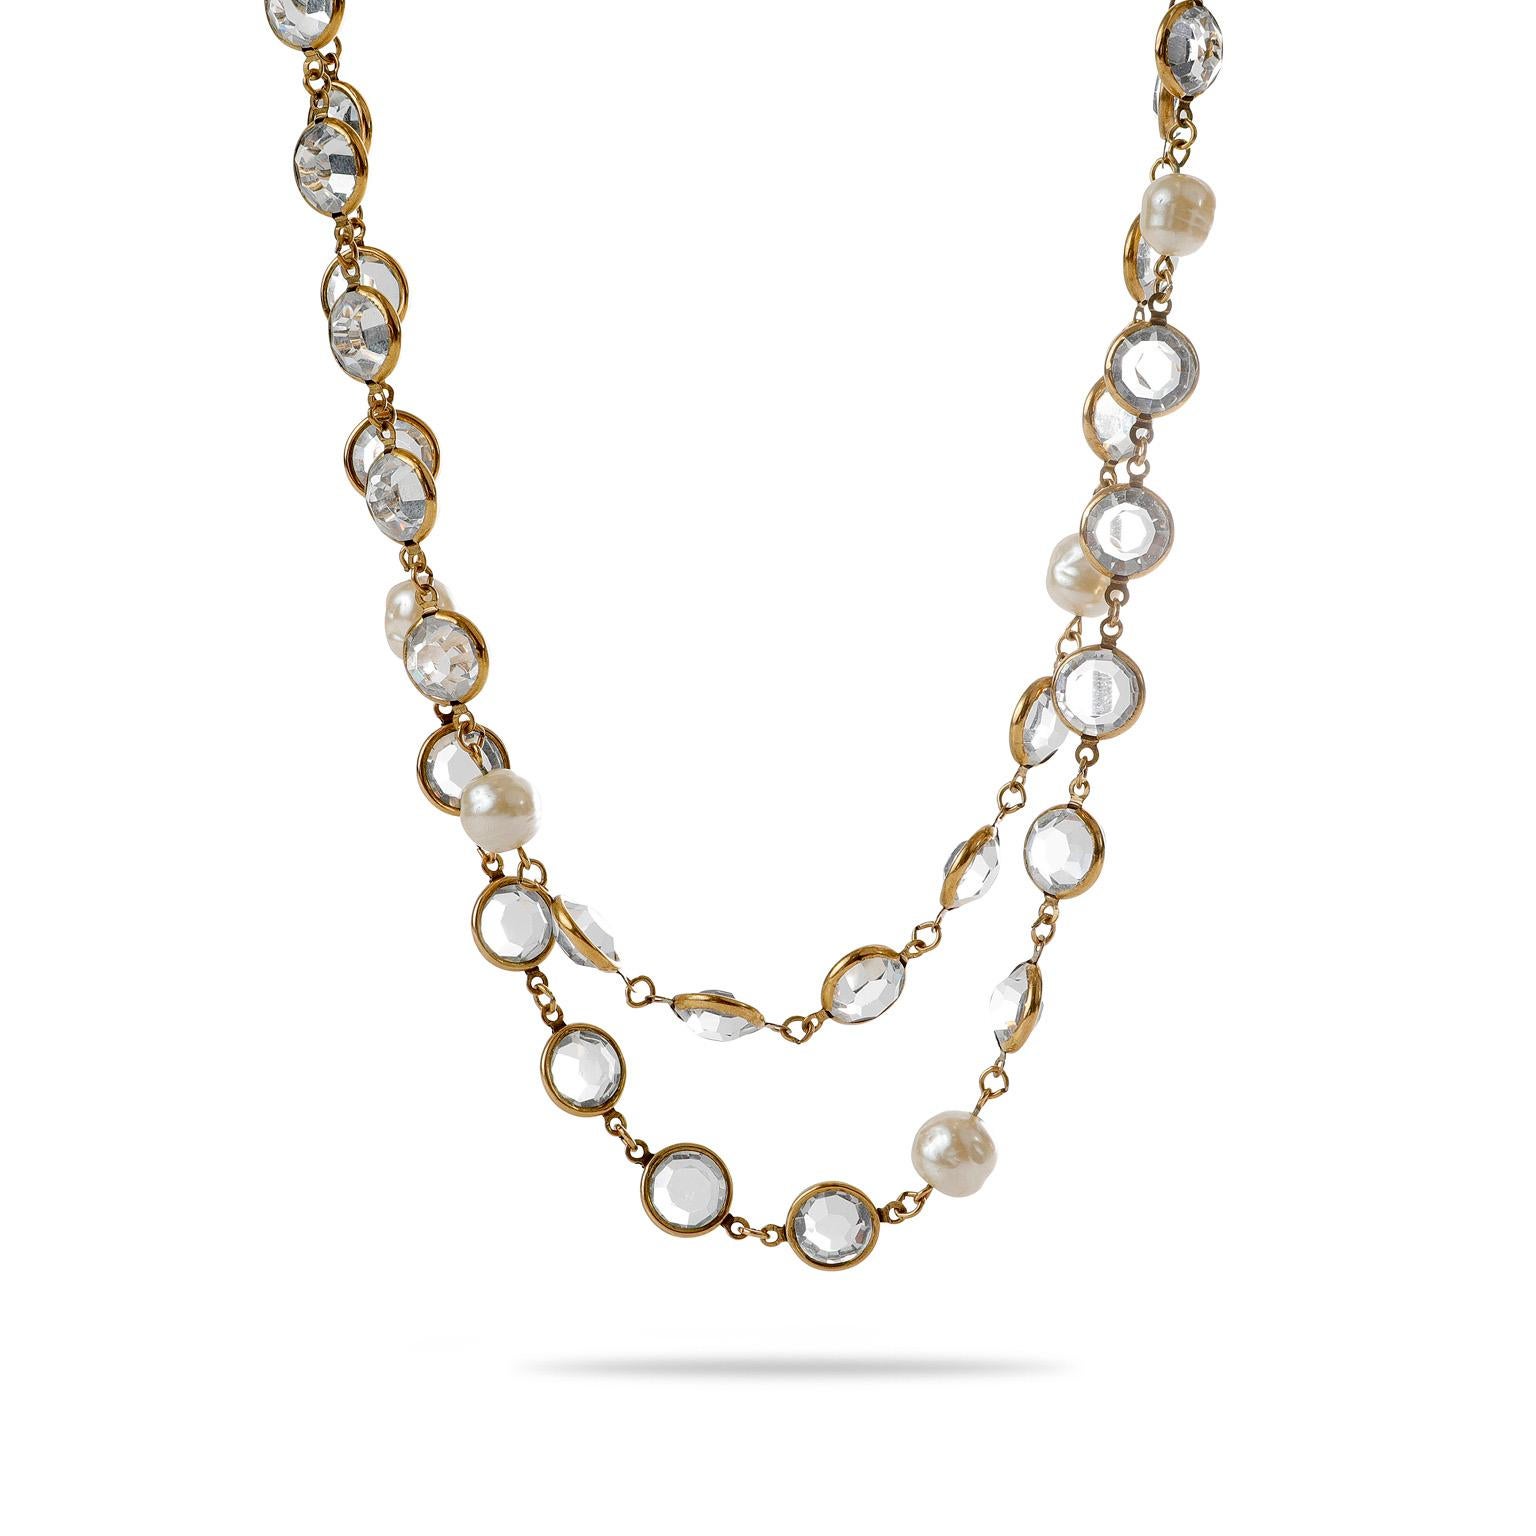 Diese authentische Chanel Rose Cut Crystal und Perle lange Halskette ist in ausgezeichnetem Vintage-Zustand aus der 1981 Collection.  Goldfarbene Kristallperlen im Rosenschliff sind an einer langen Halskette miteinander verbunden.  Durchsetzt mit